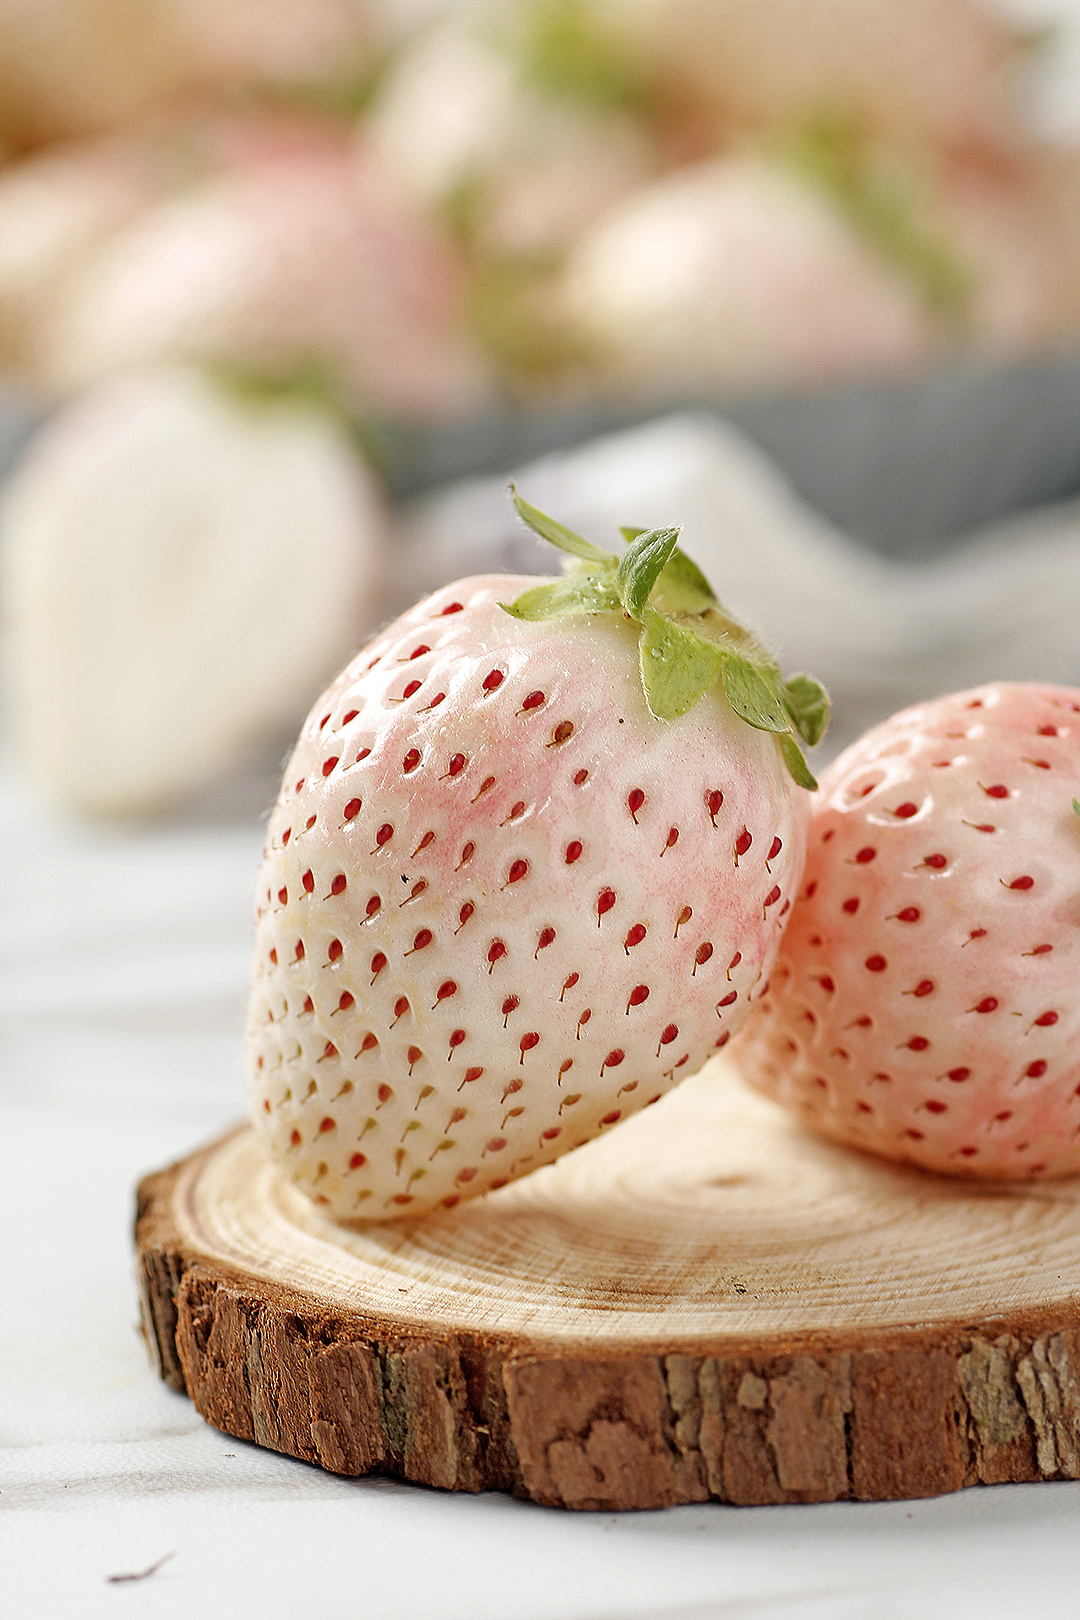 淡白草莓图片